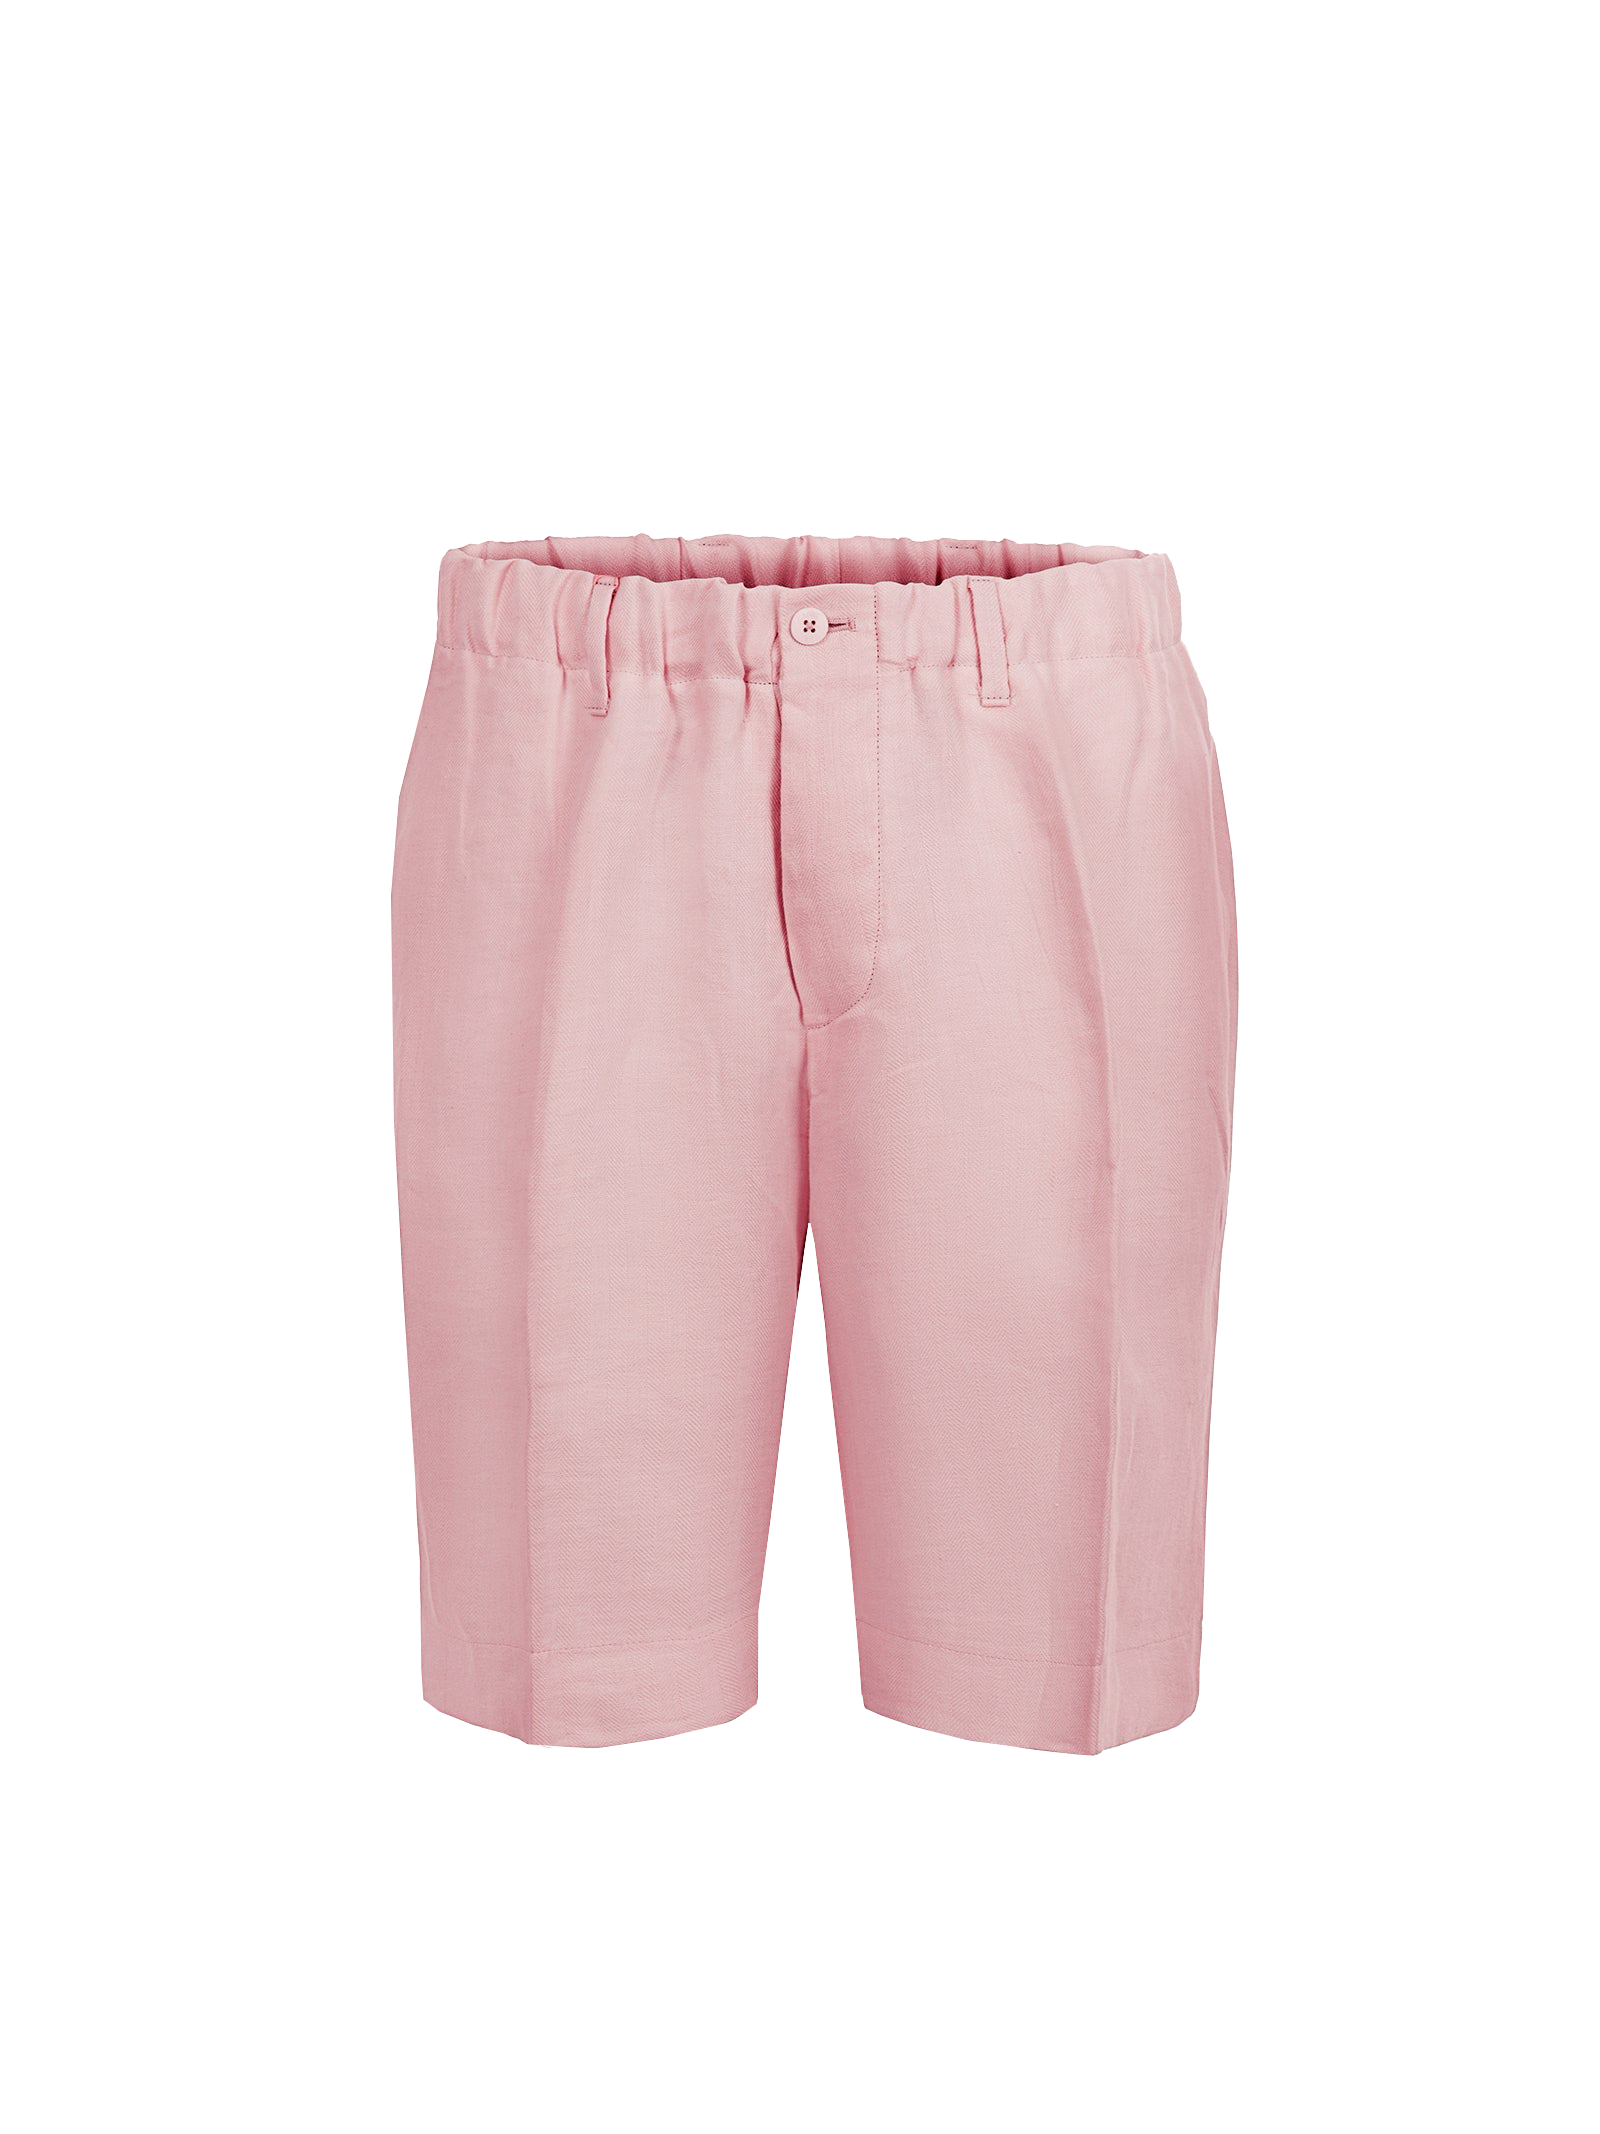 Bermuda Capri for men 100% Capri pink linen pant front